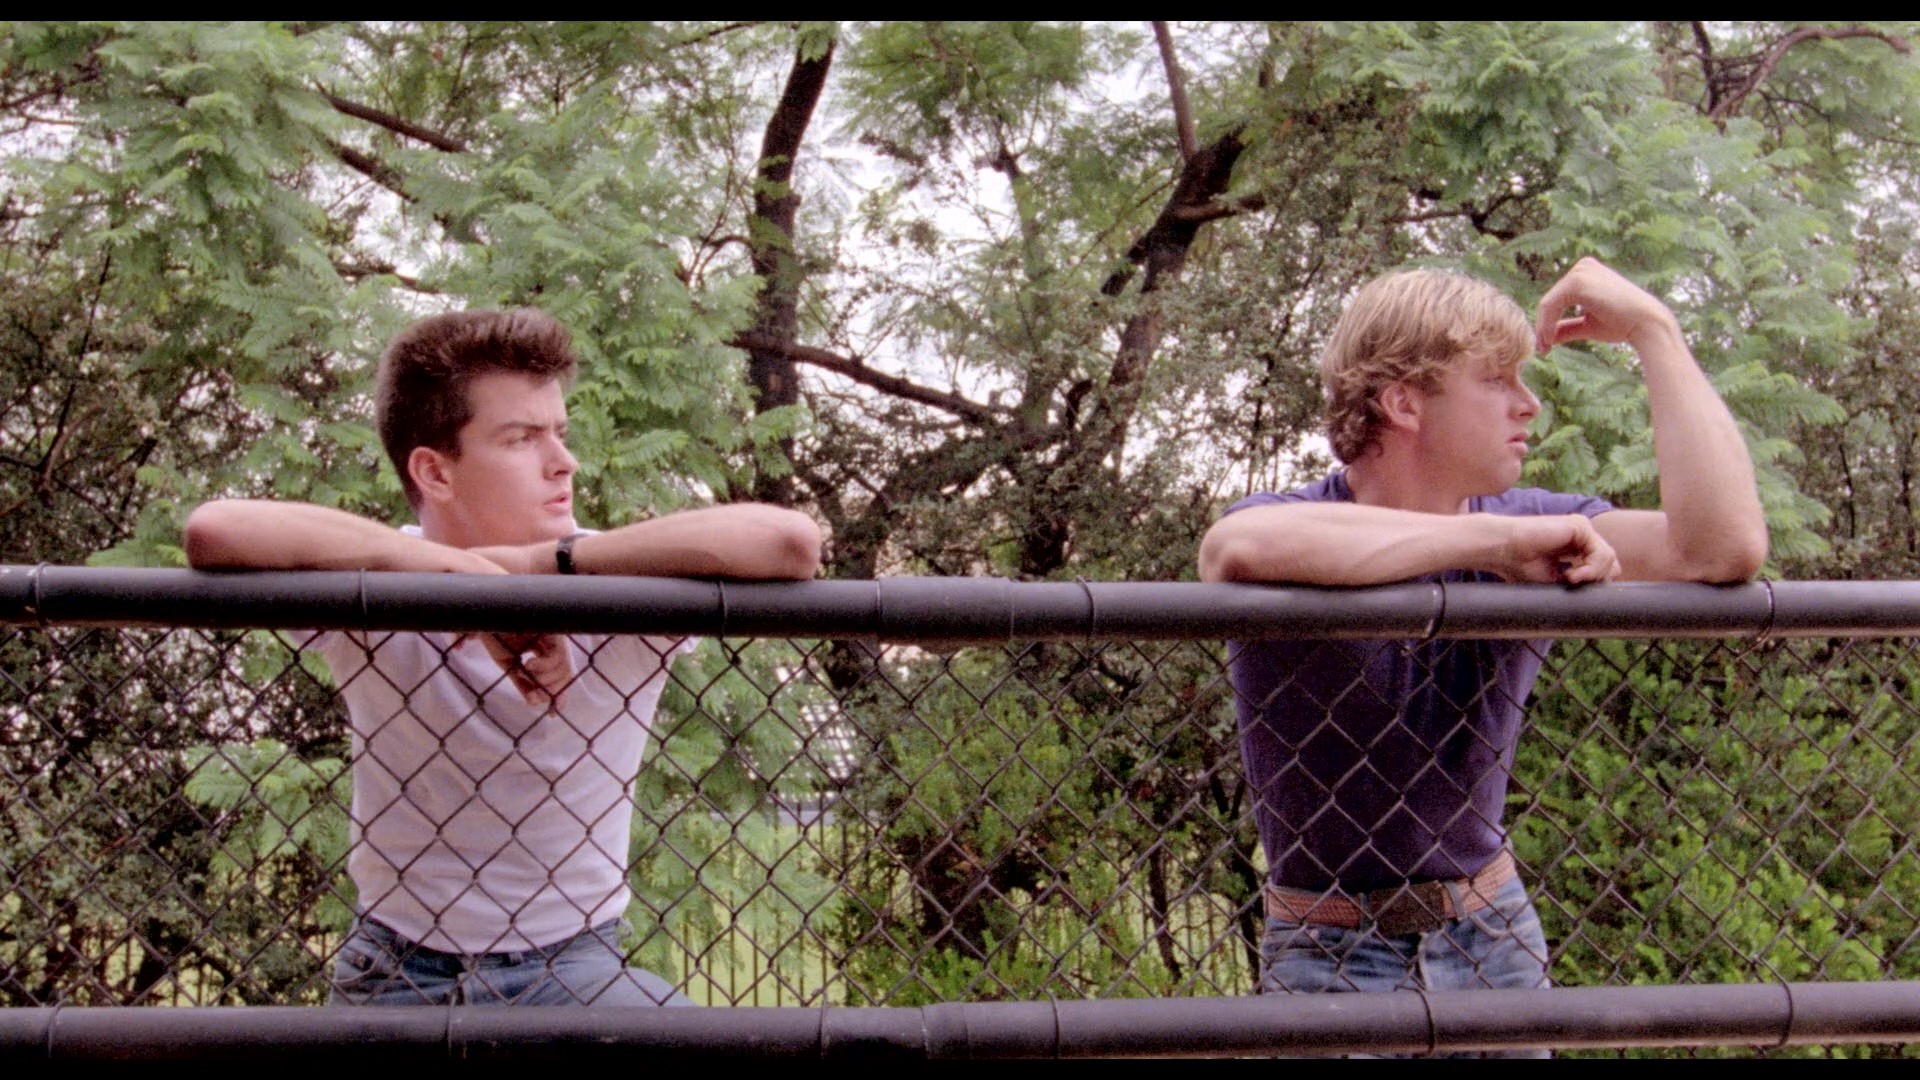 The Boys Next Door (1985) Screenshot 2